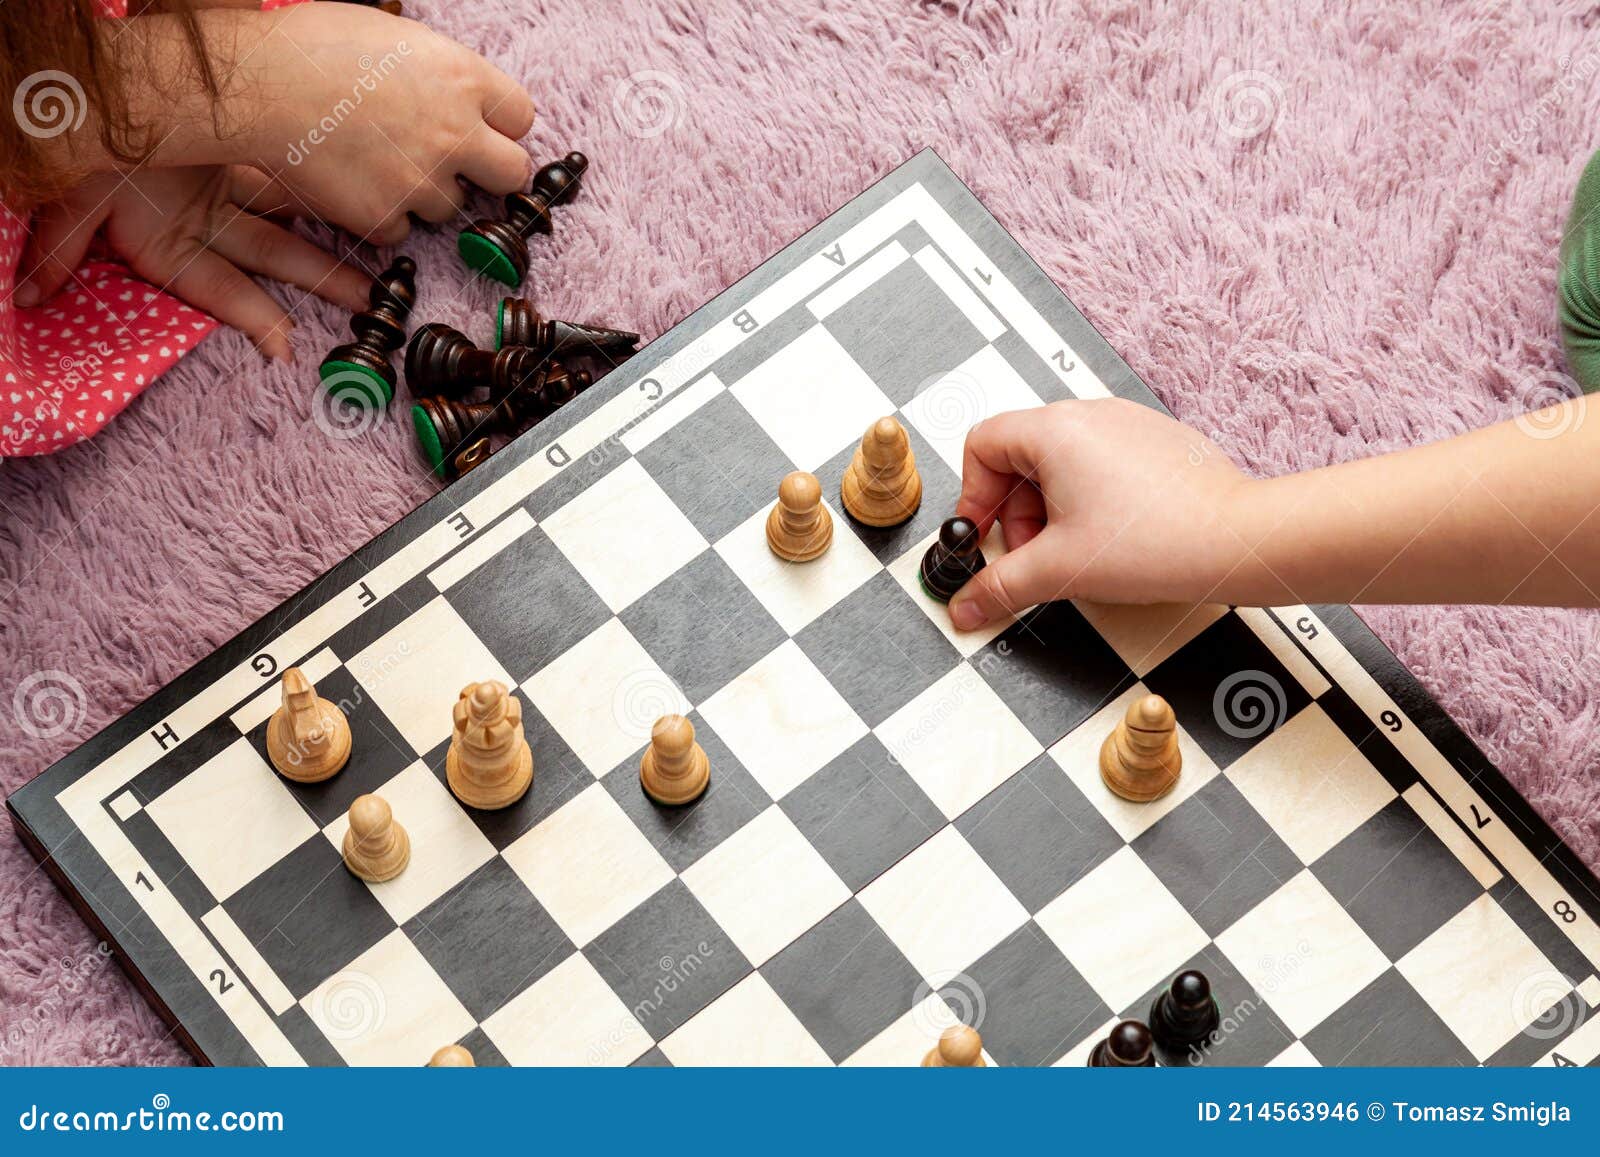 Aula de xadrez para crianças 2